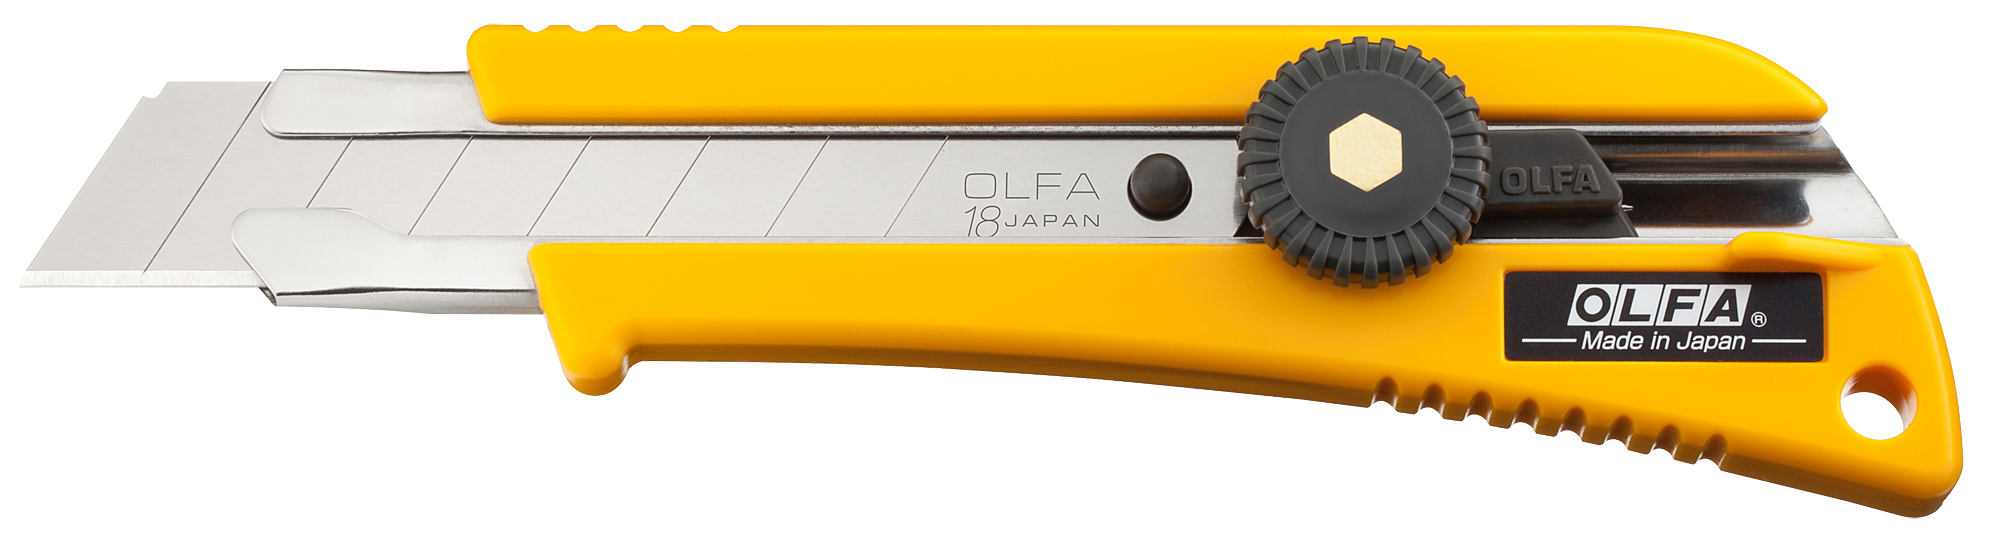 Нож монтажный, винтовая фиксация, лезвие: 1.8 см / выдвижное / сегментированное / отламывающееся, OLFA L-2 (OL-L-2)